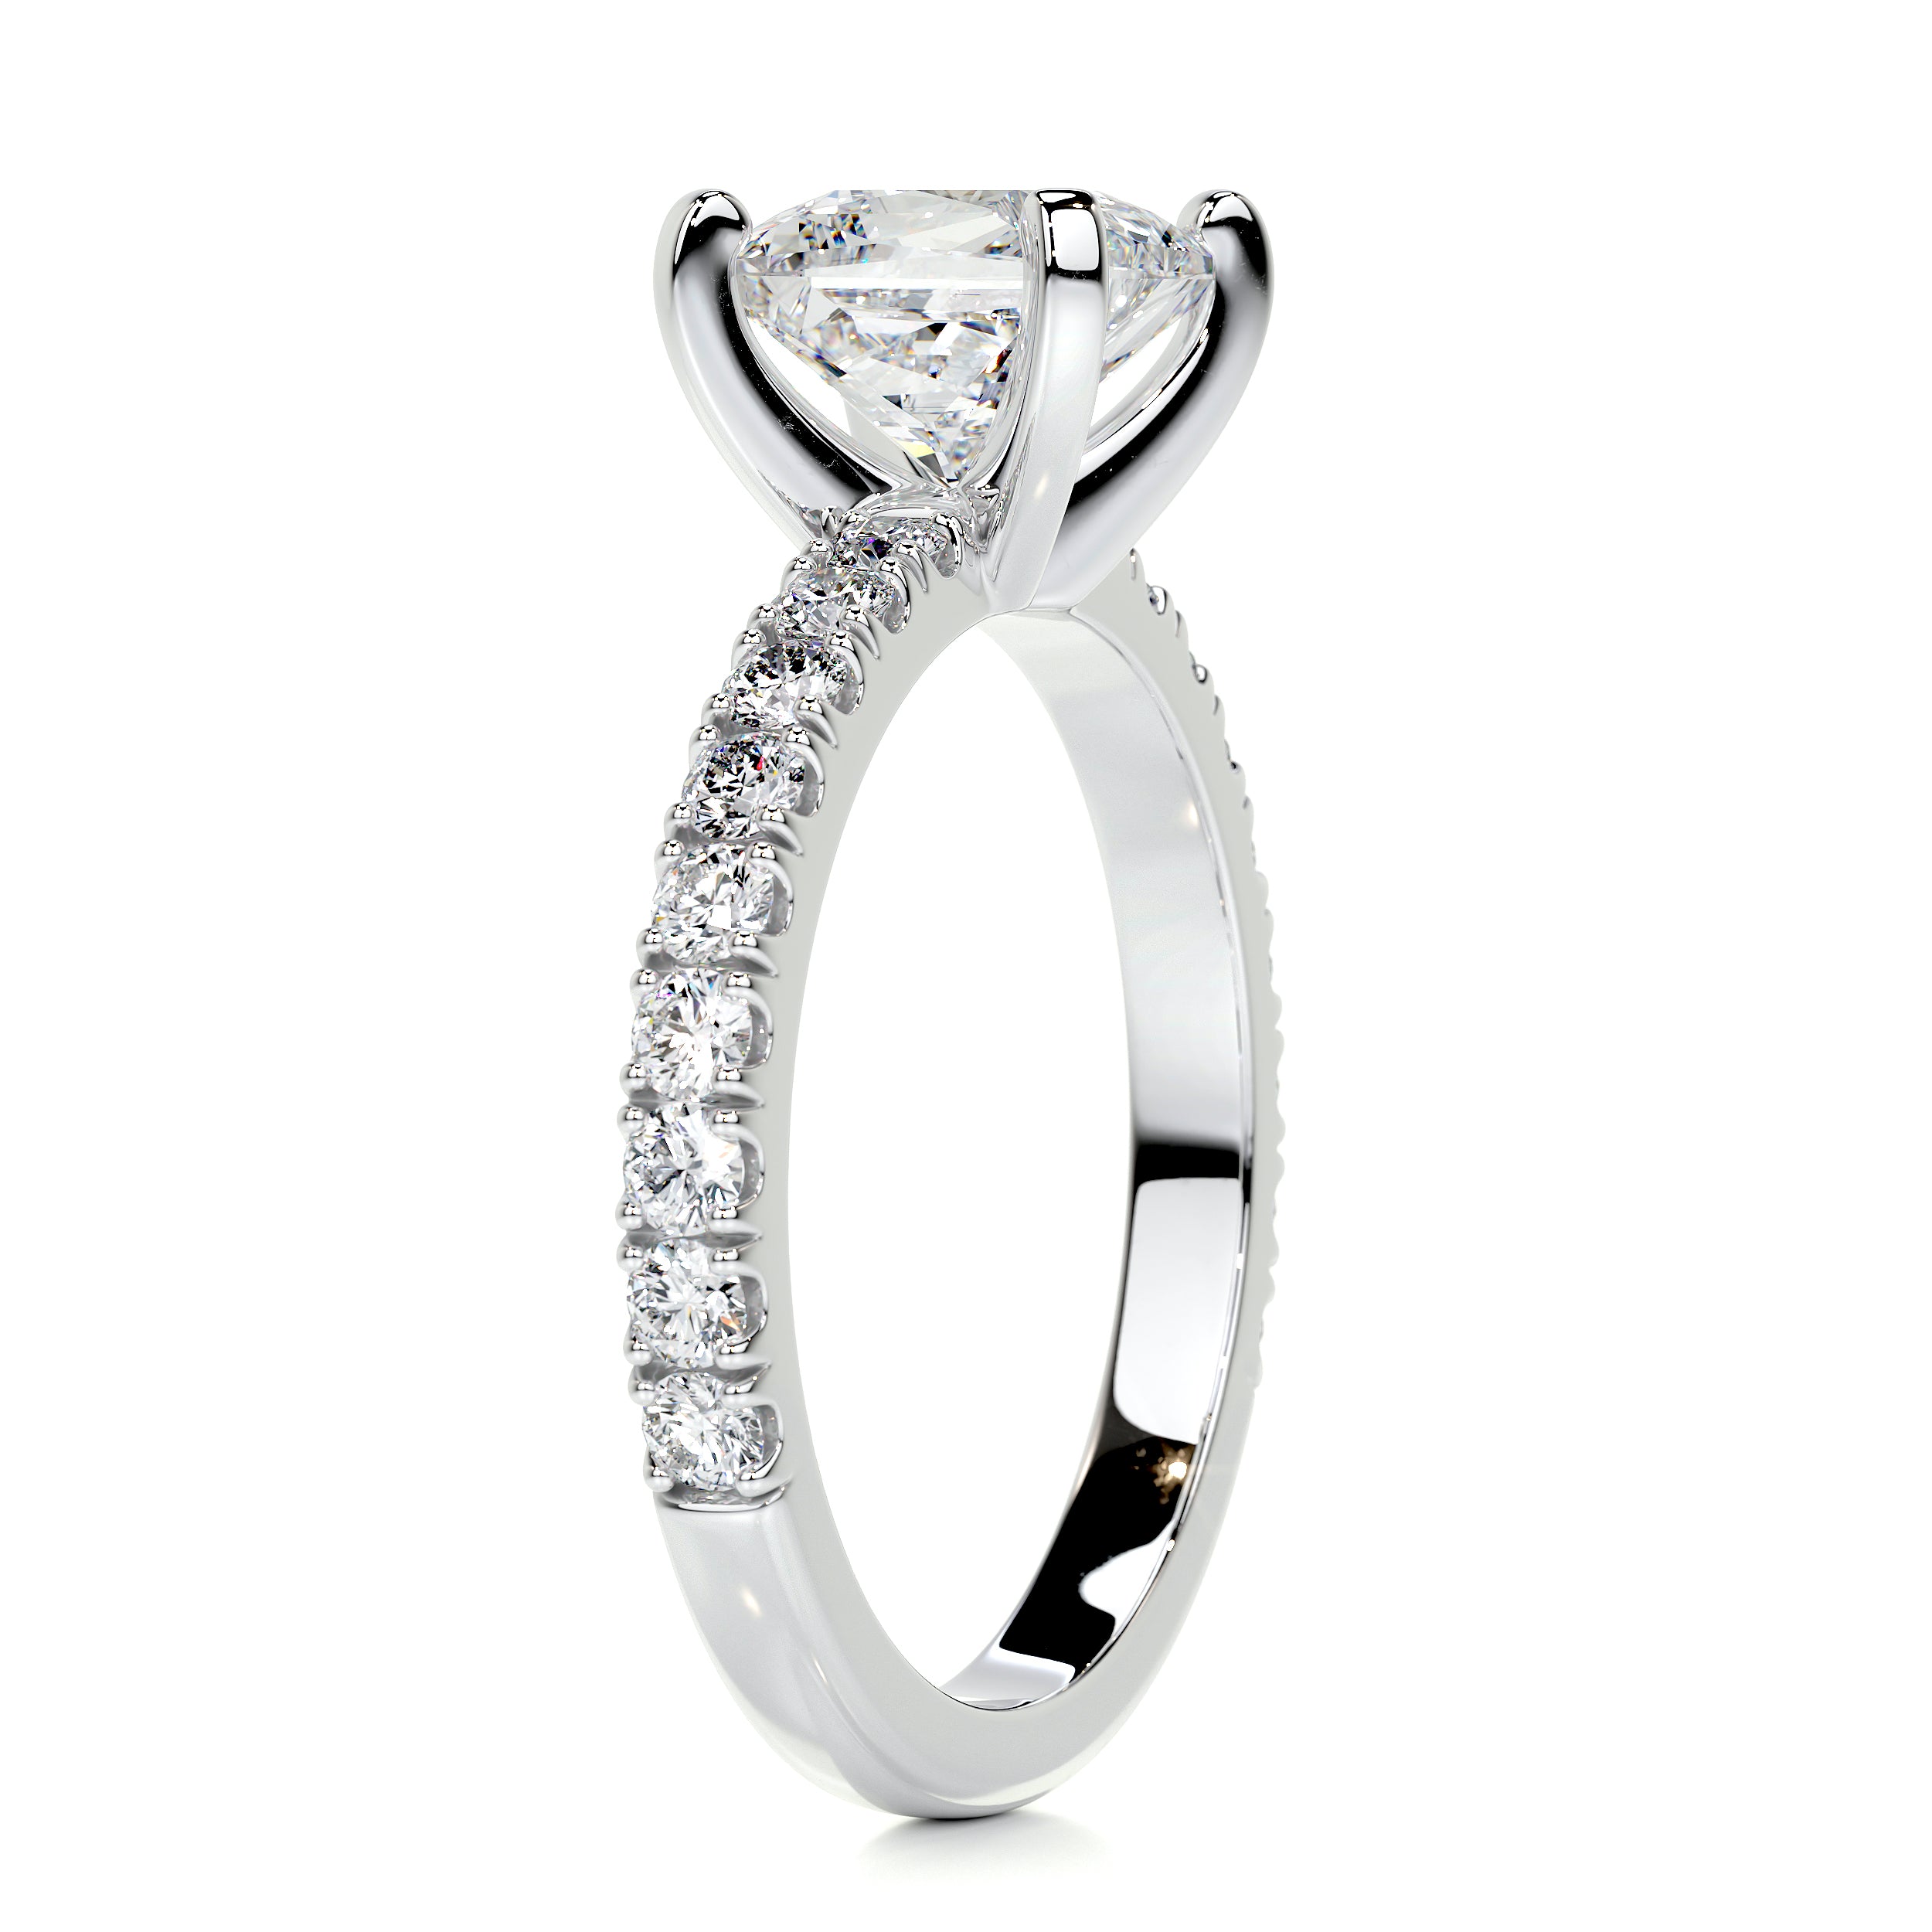 Blair Diamond Engagement Ring   (2 Carat) -14K White Gold